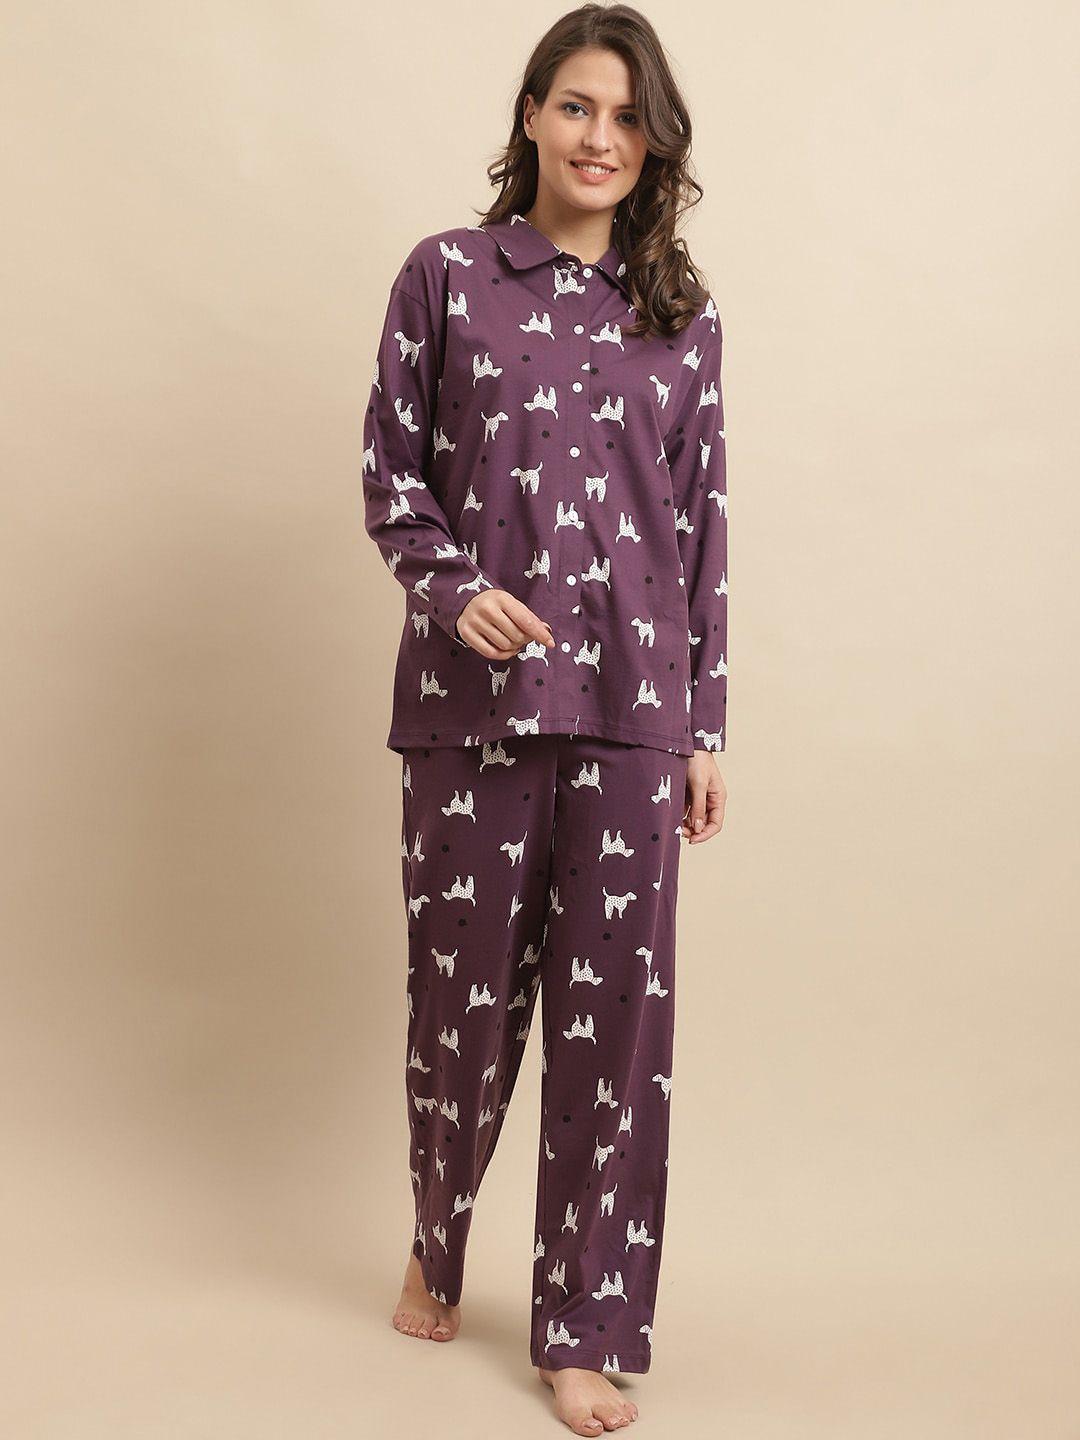 kanvin-purple-&-white-conversational-printed-pure-cotton-shirt-&-pyjamas